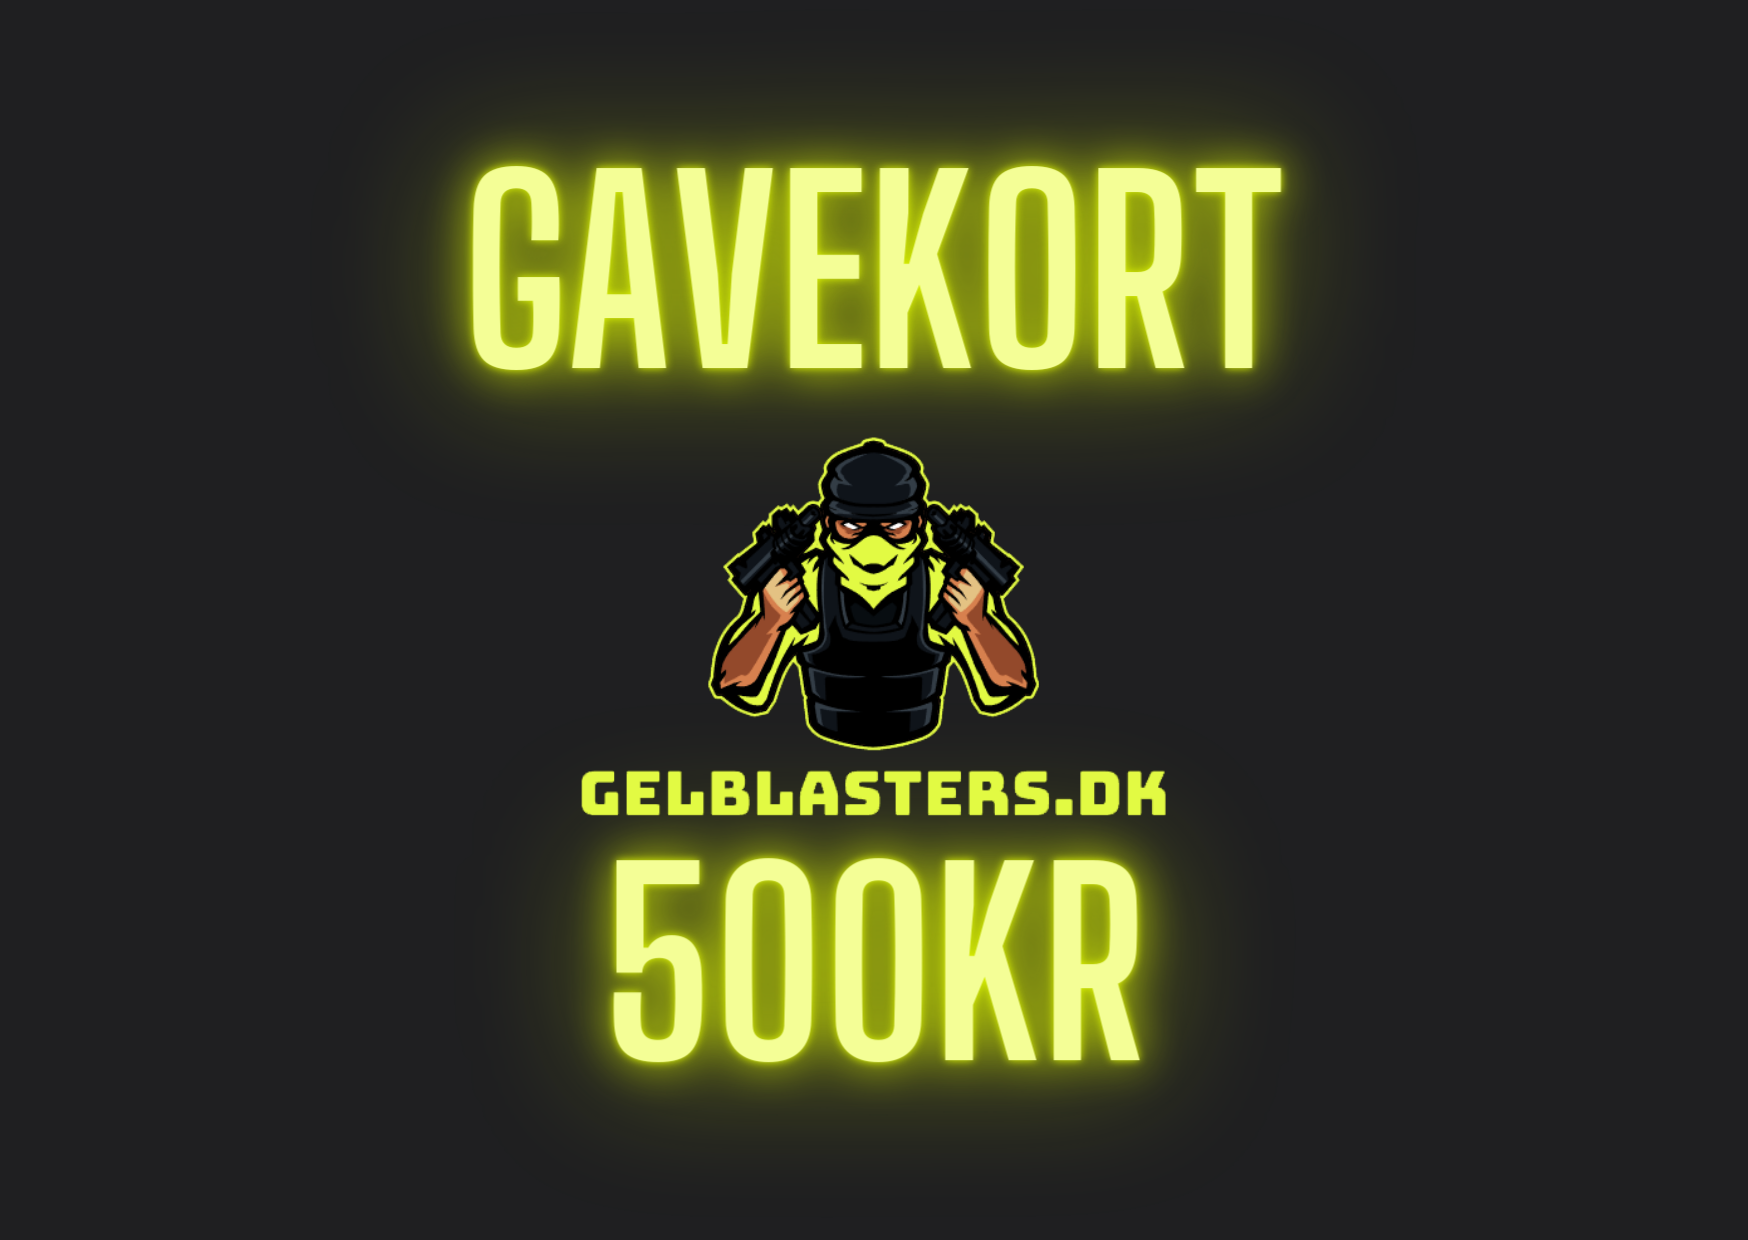 Gel Blaster Gavekort Gelblasters.dk